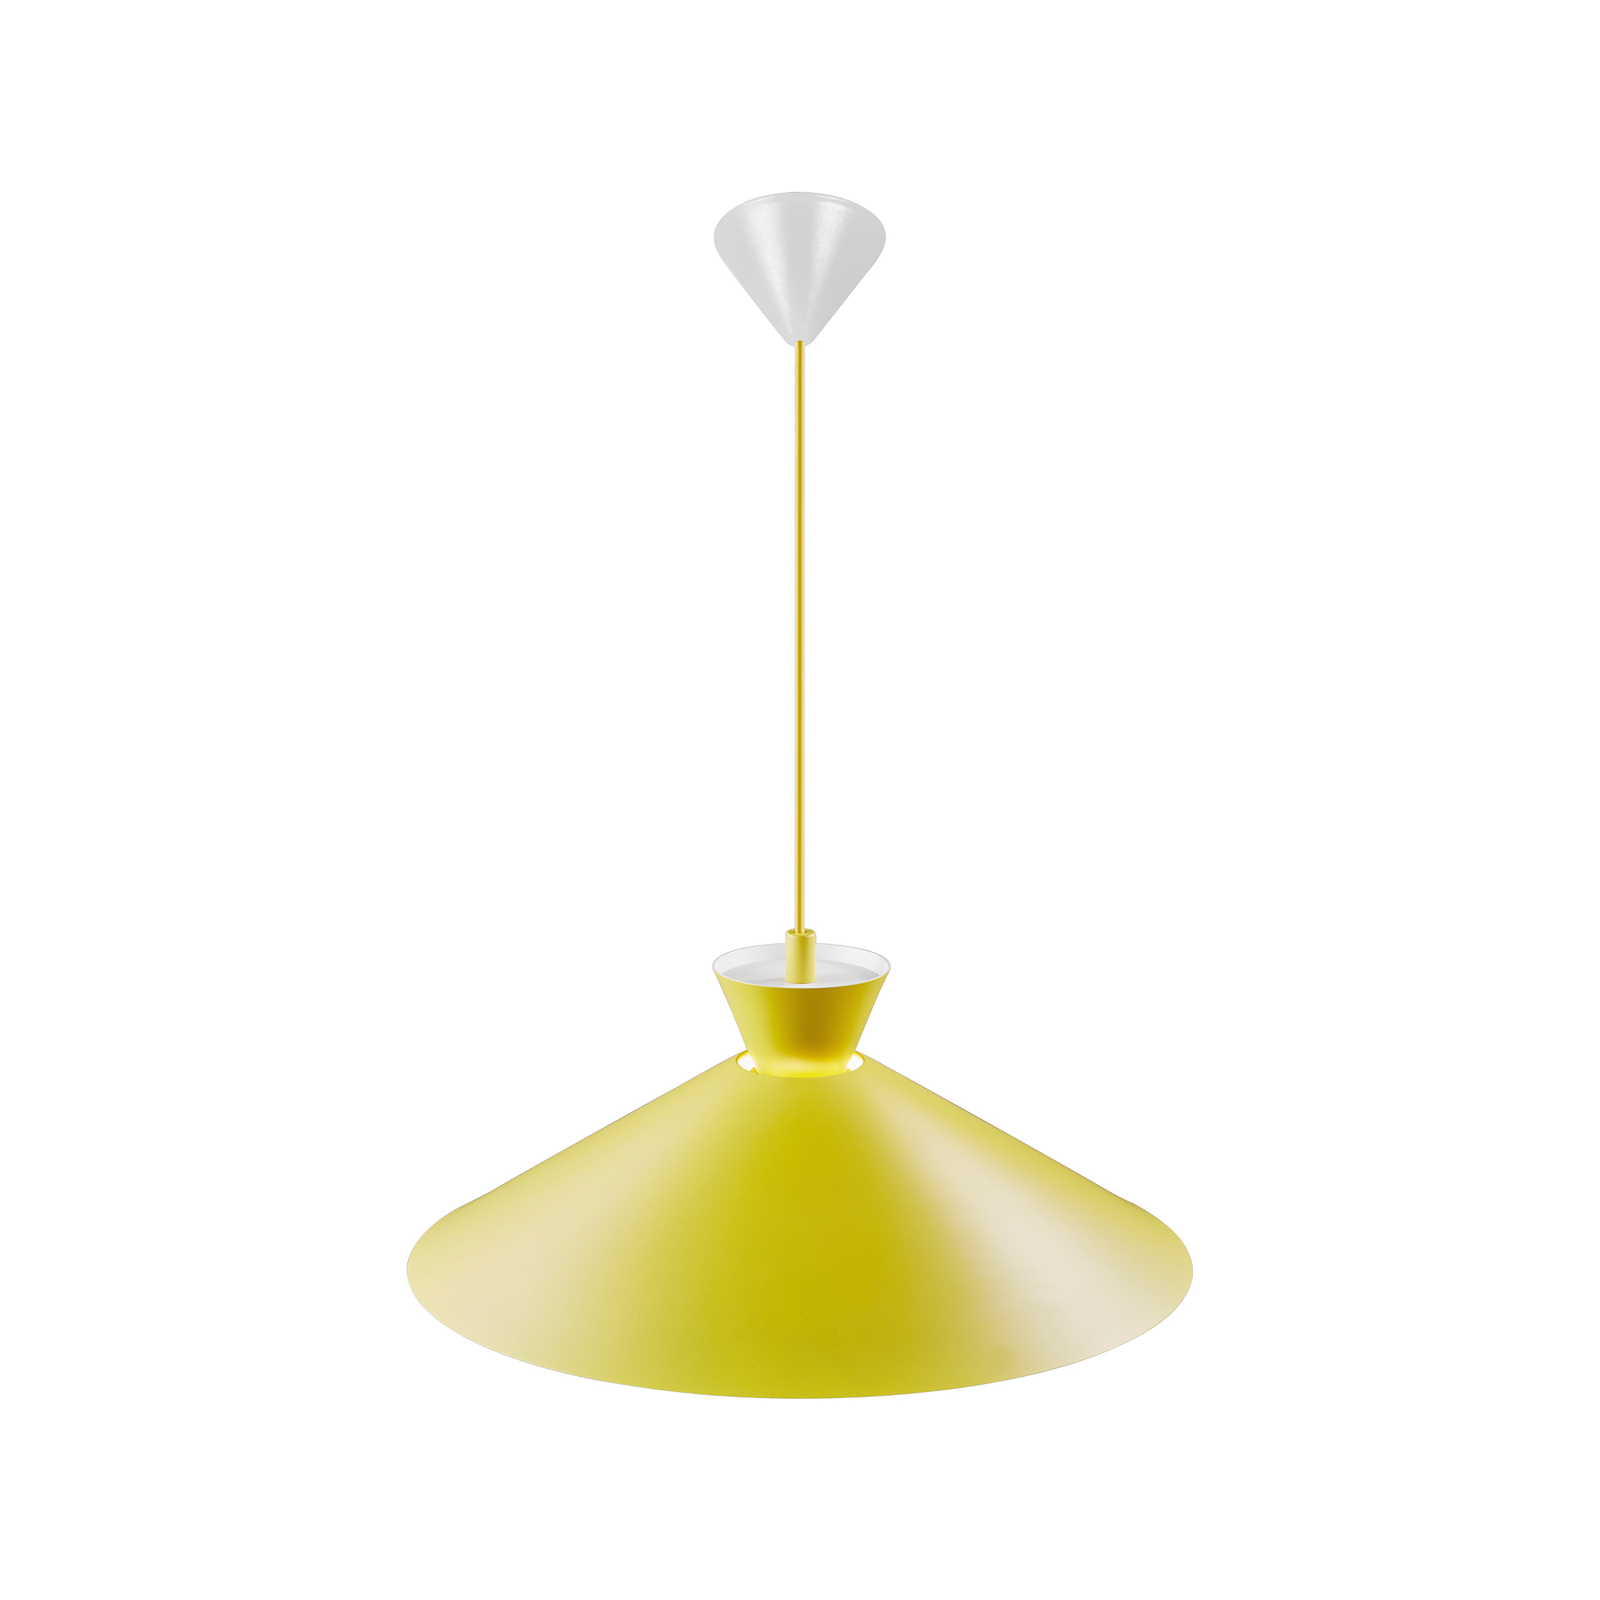 Dial hanglamp met metalen kap, geel, Ø 45 cm